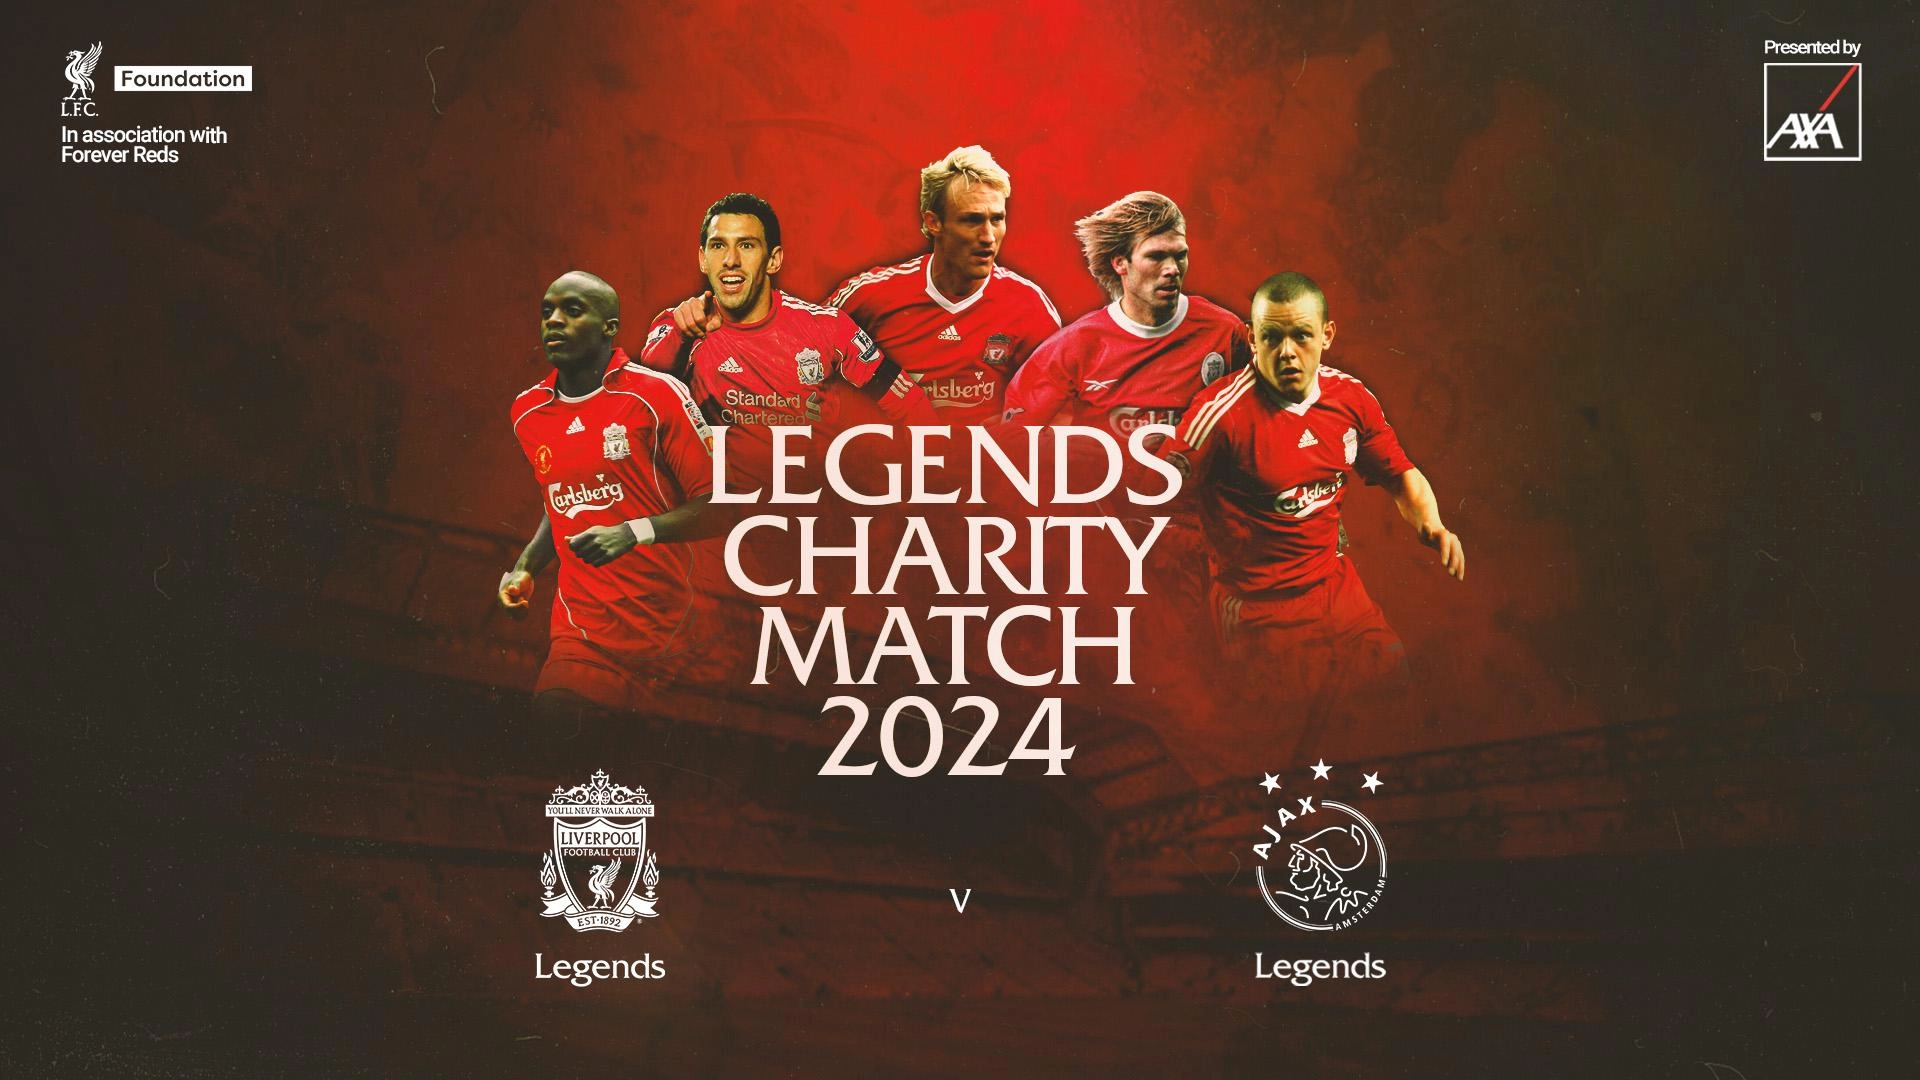 Legends charity match